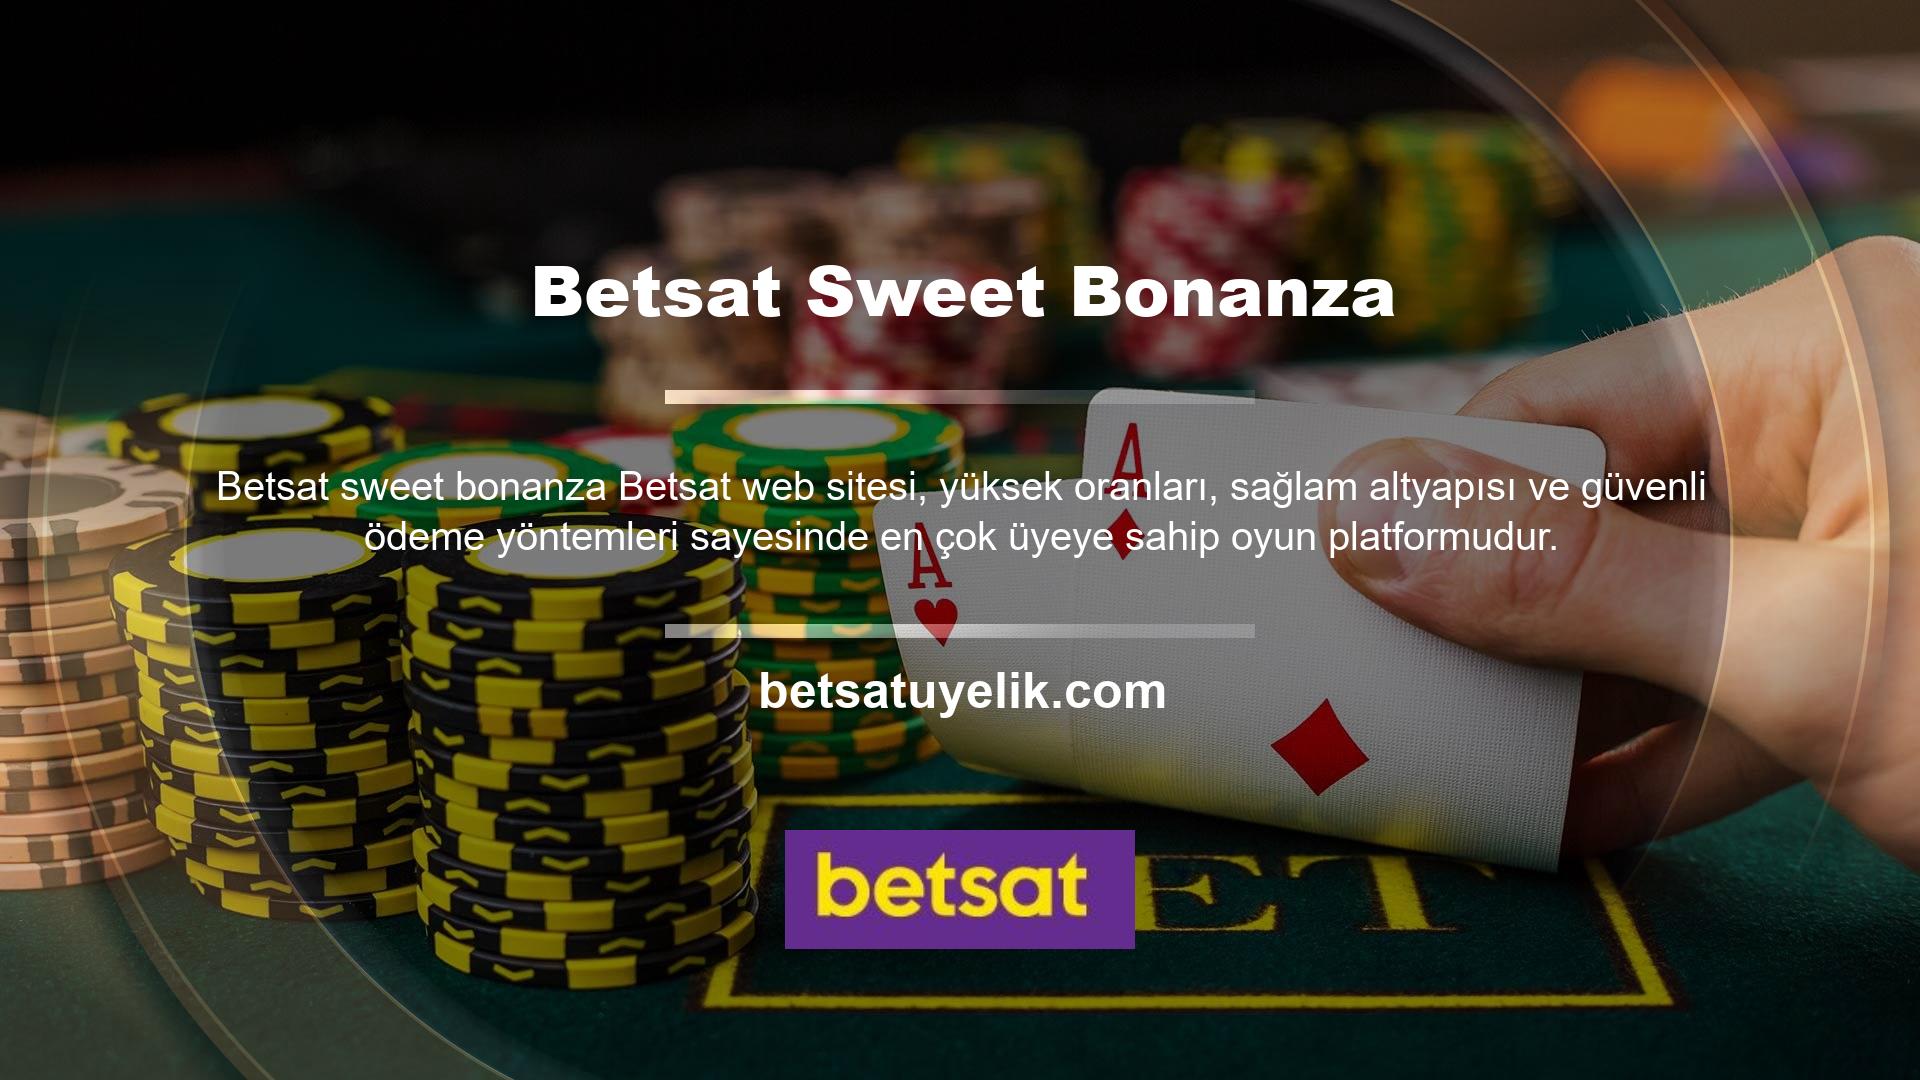 Betsat web sitesi oyun dünyasında kalitesini kanıtlamış ve ev sahipliği yaptığı turnuvalar oldukça popüler